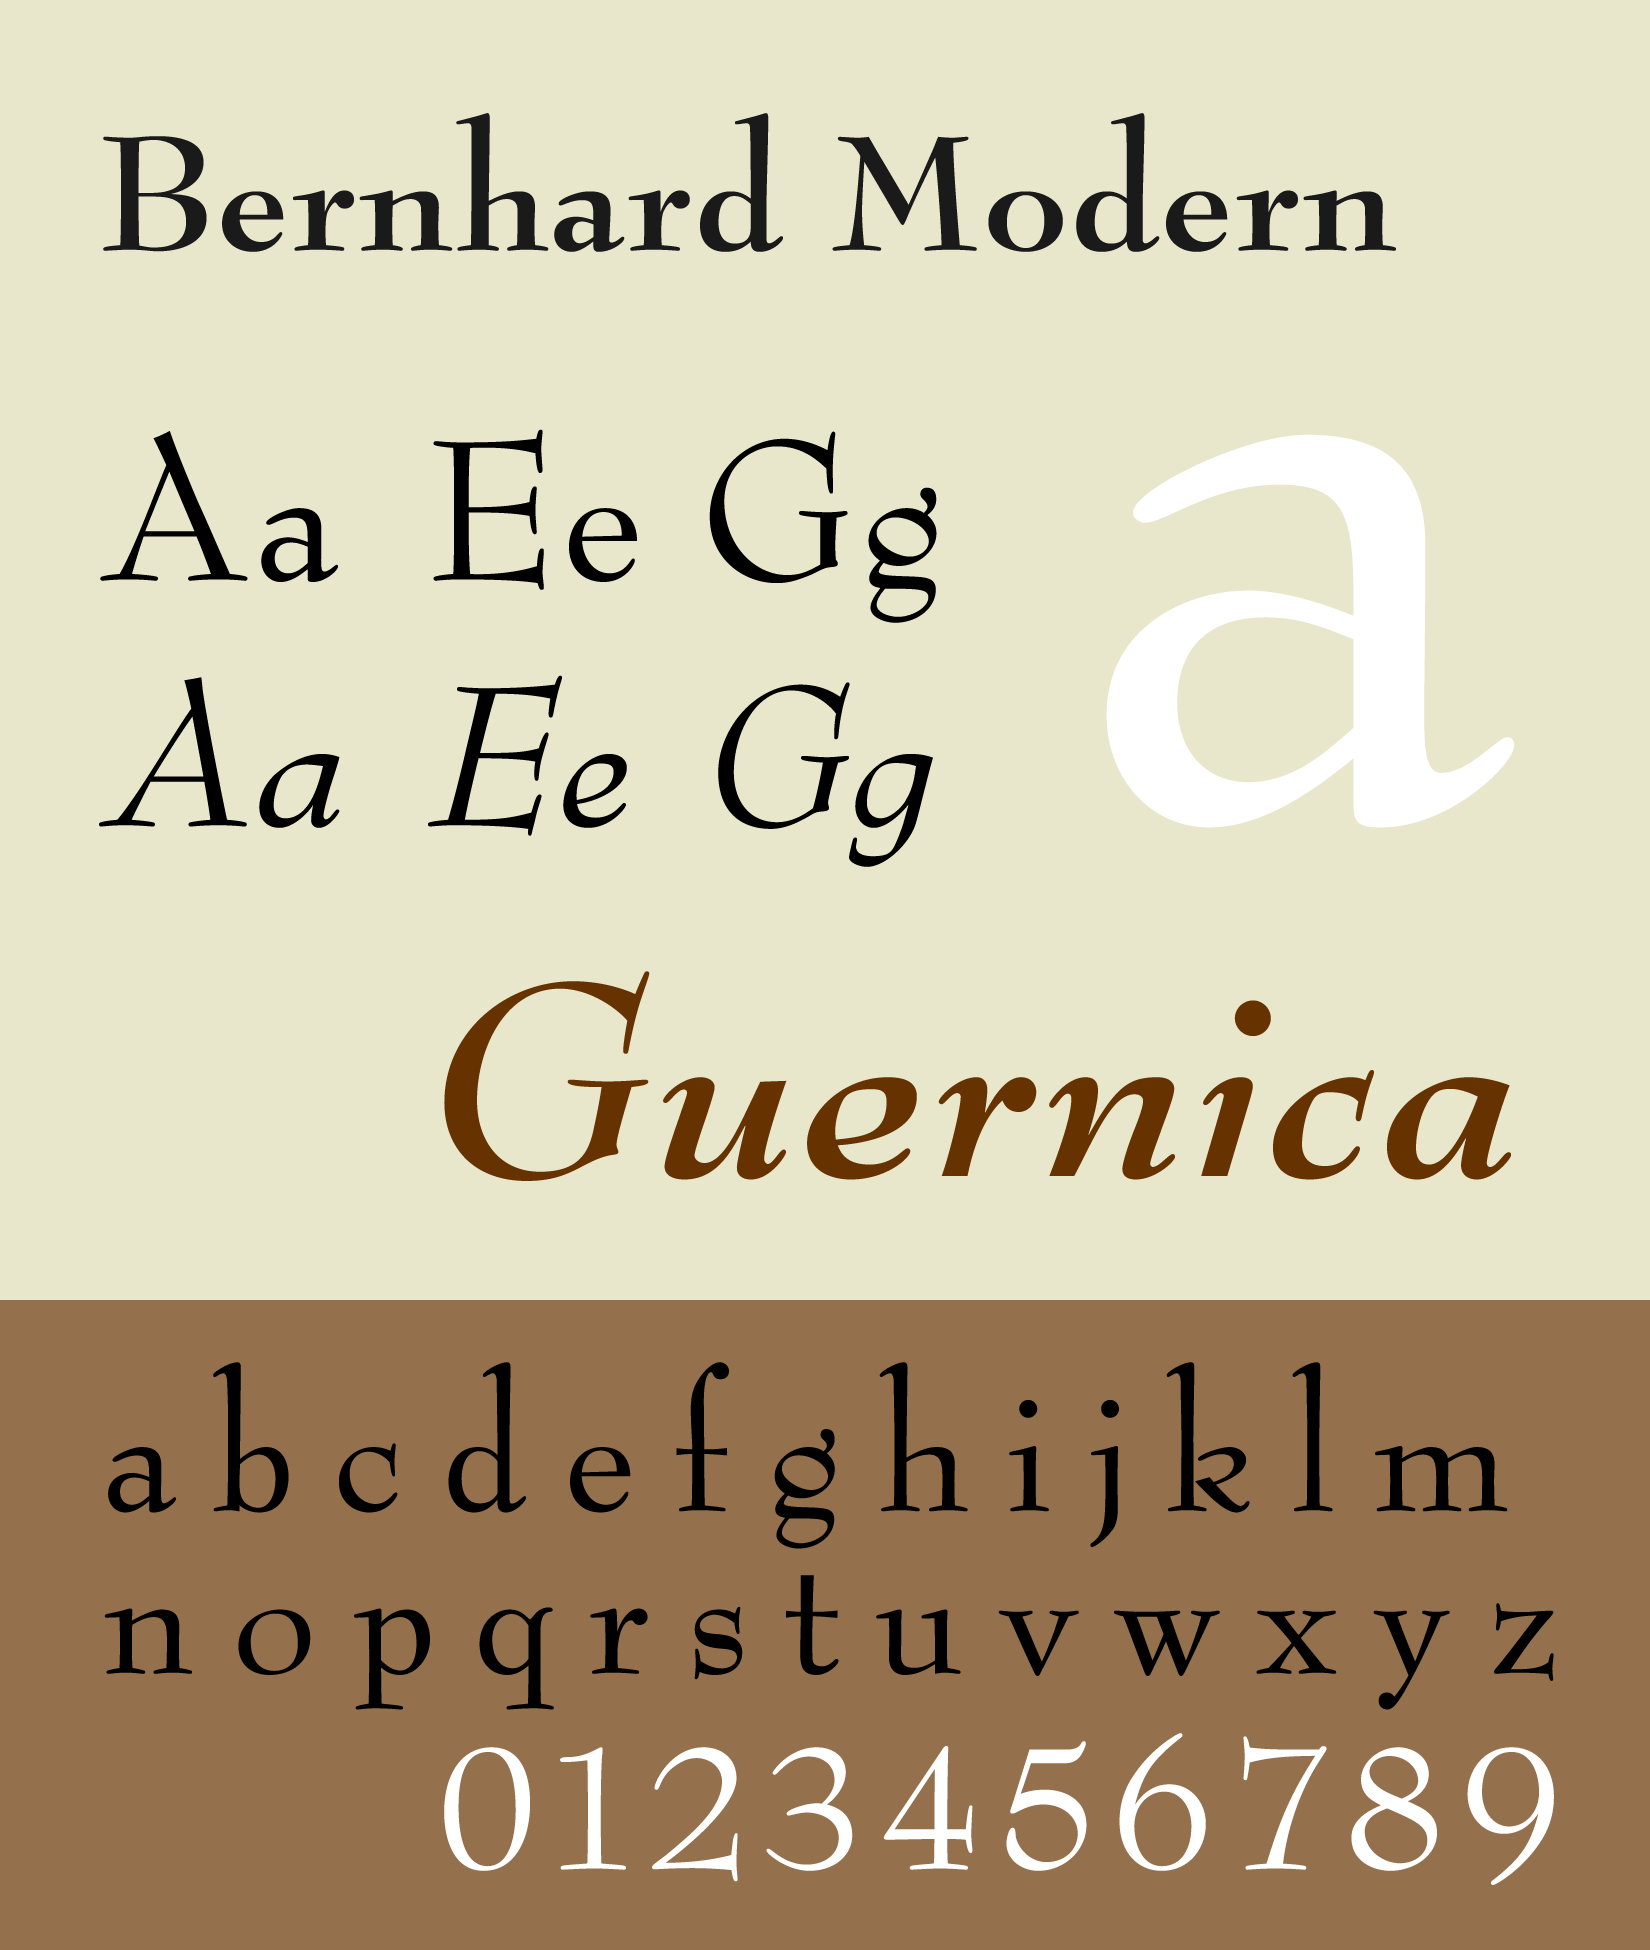 Beispiel einer Bernhard Modern-Schriftart